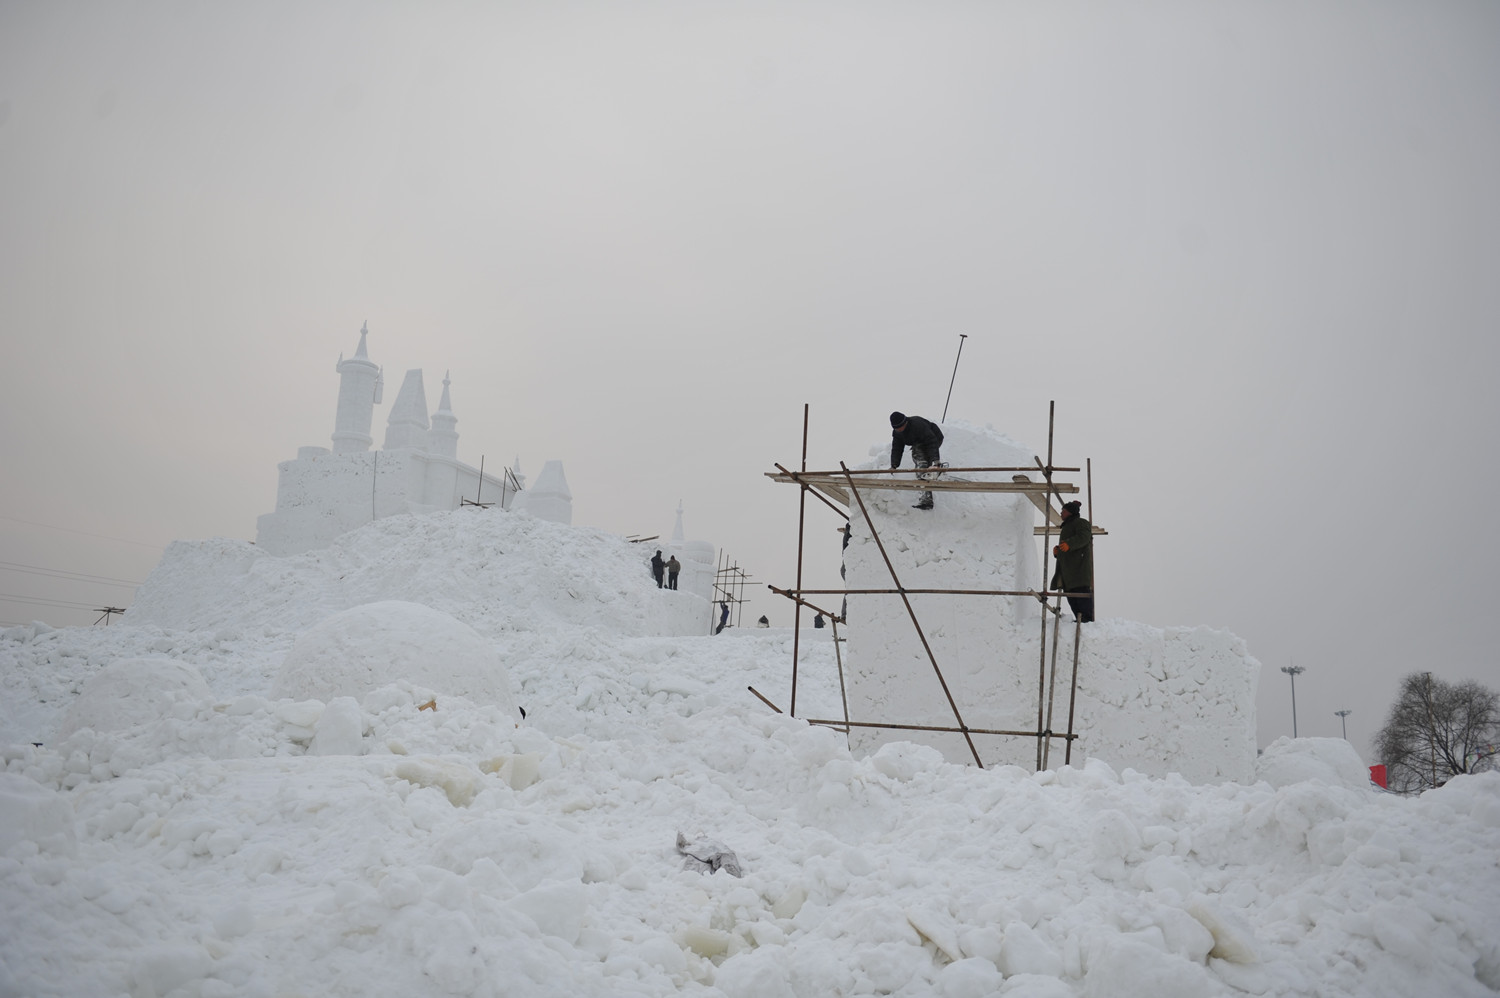 2012年1月《冰雪世界》，辽宁省沈阳市，雕塑工人正在制作供游客参观的雪雕，政府计划将冬季的棋盘山风景区打造成冰雪大世界。谢军摄影.JPG